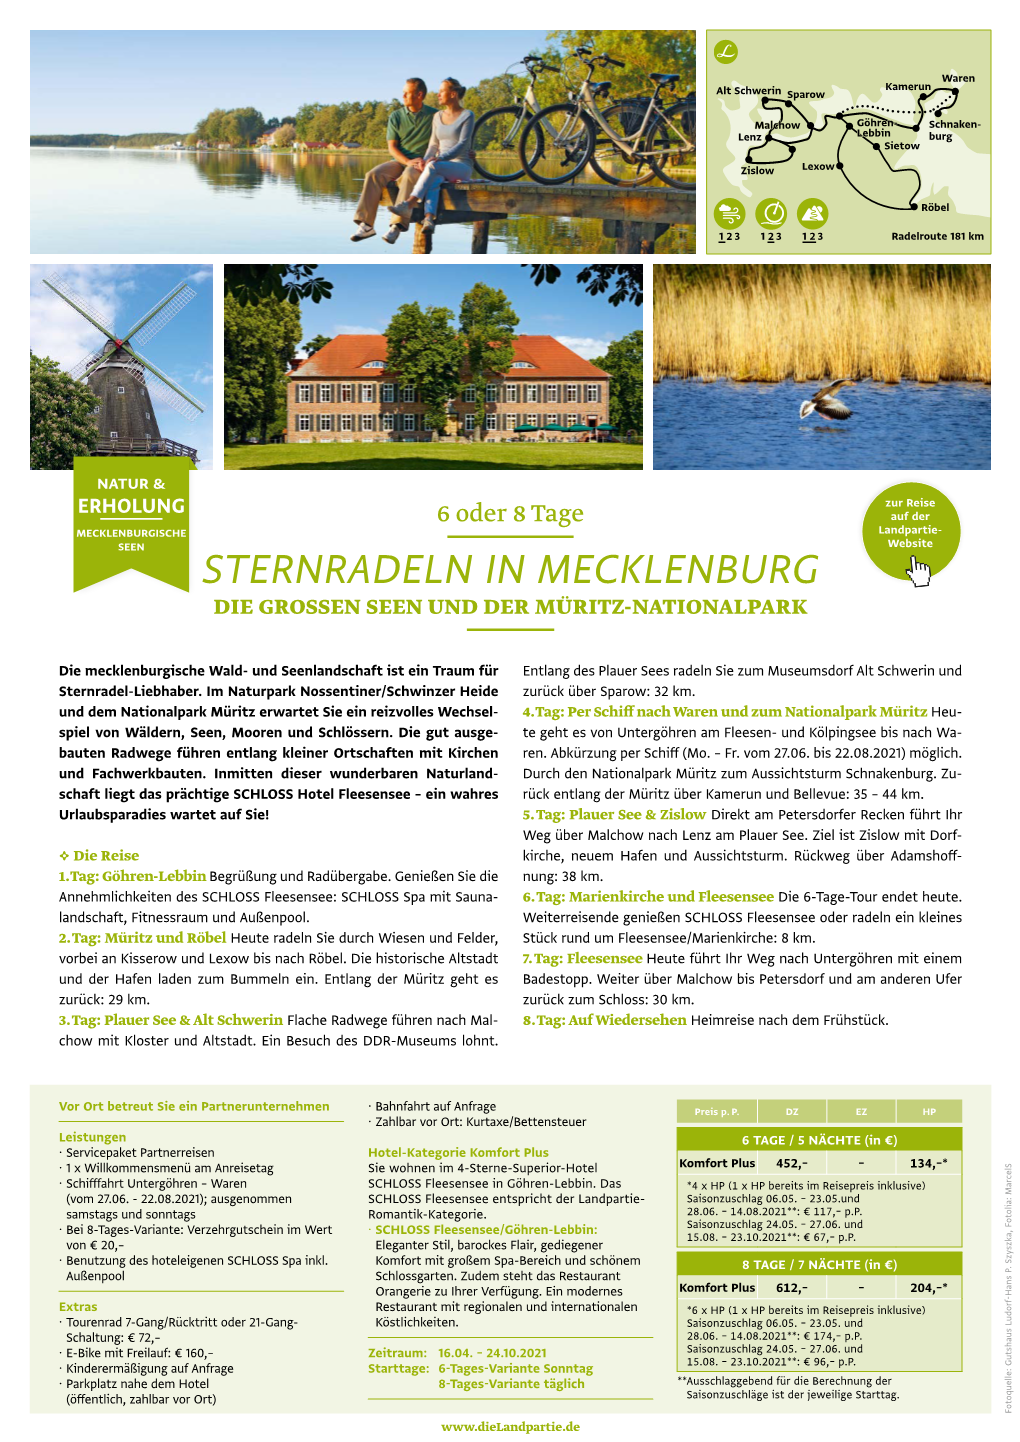 Sternradeln in Mecklenburg Die Grossen Seen Und Der Müritz-Nationalpark